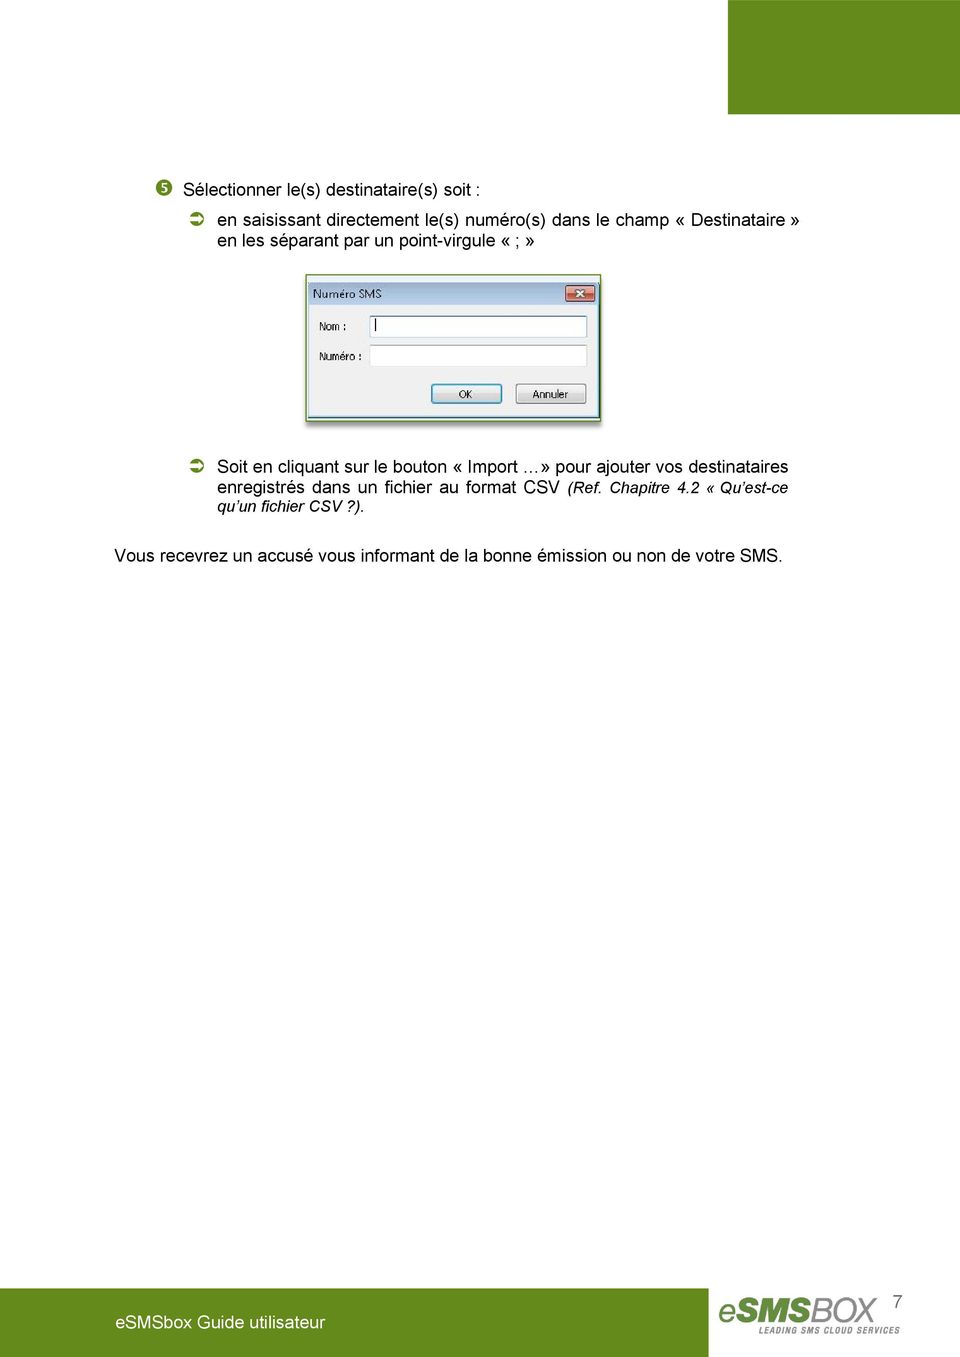 pour ajouter vos destinataires enregistrés dans un fichier au format CSV (Ref. Chapitre 4.